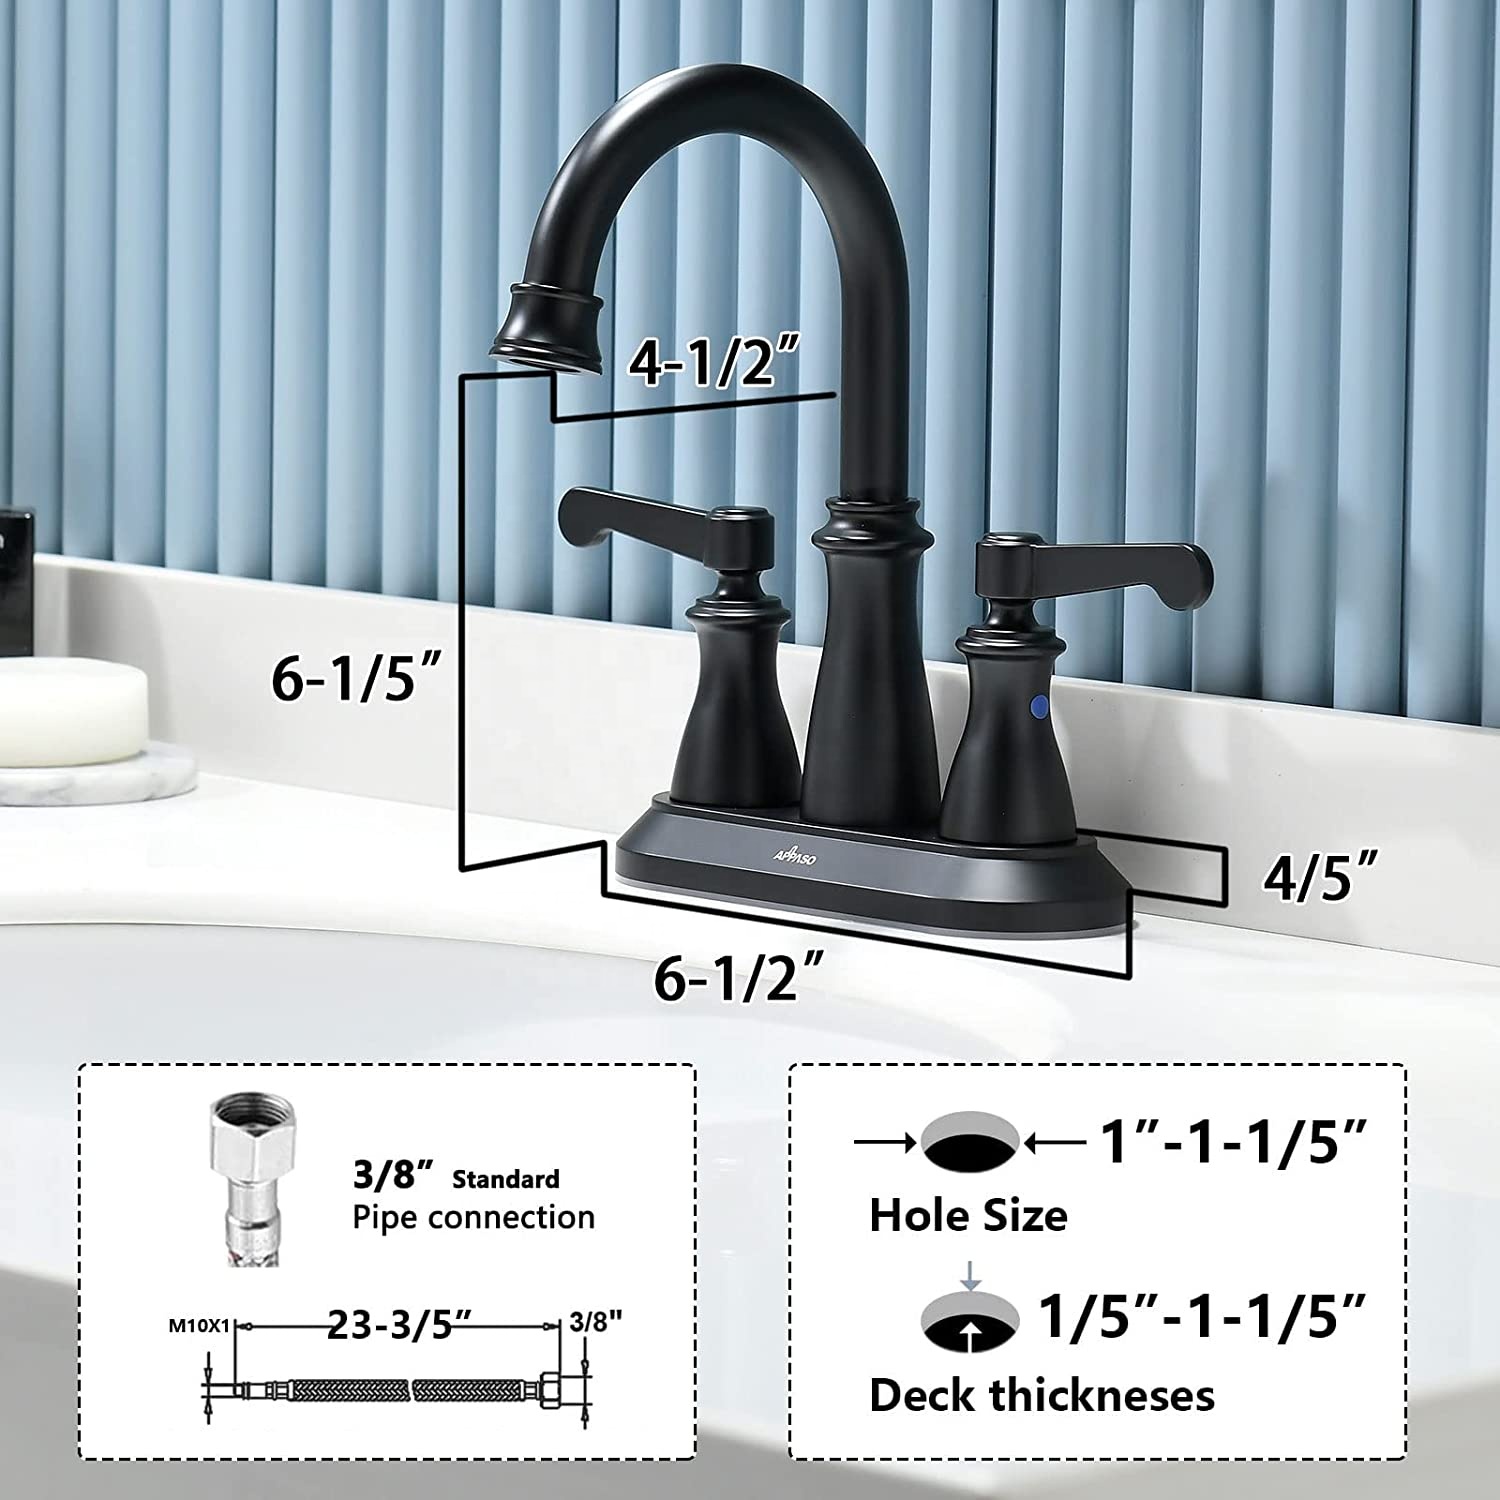 APS133-MB Классический смеситель для раковины с 3 отверстиями, черный смеситель для раковины ванной комнаты, смеситель для ванной комнаты с двойной ручкой